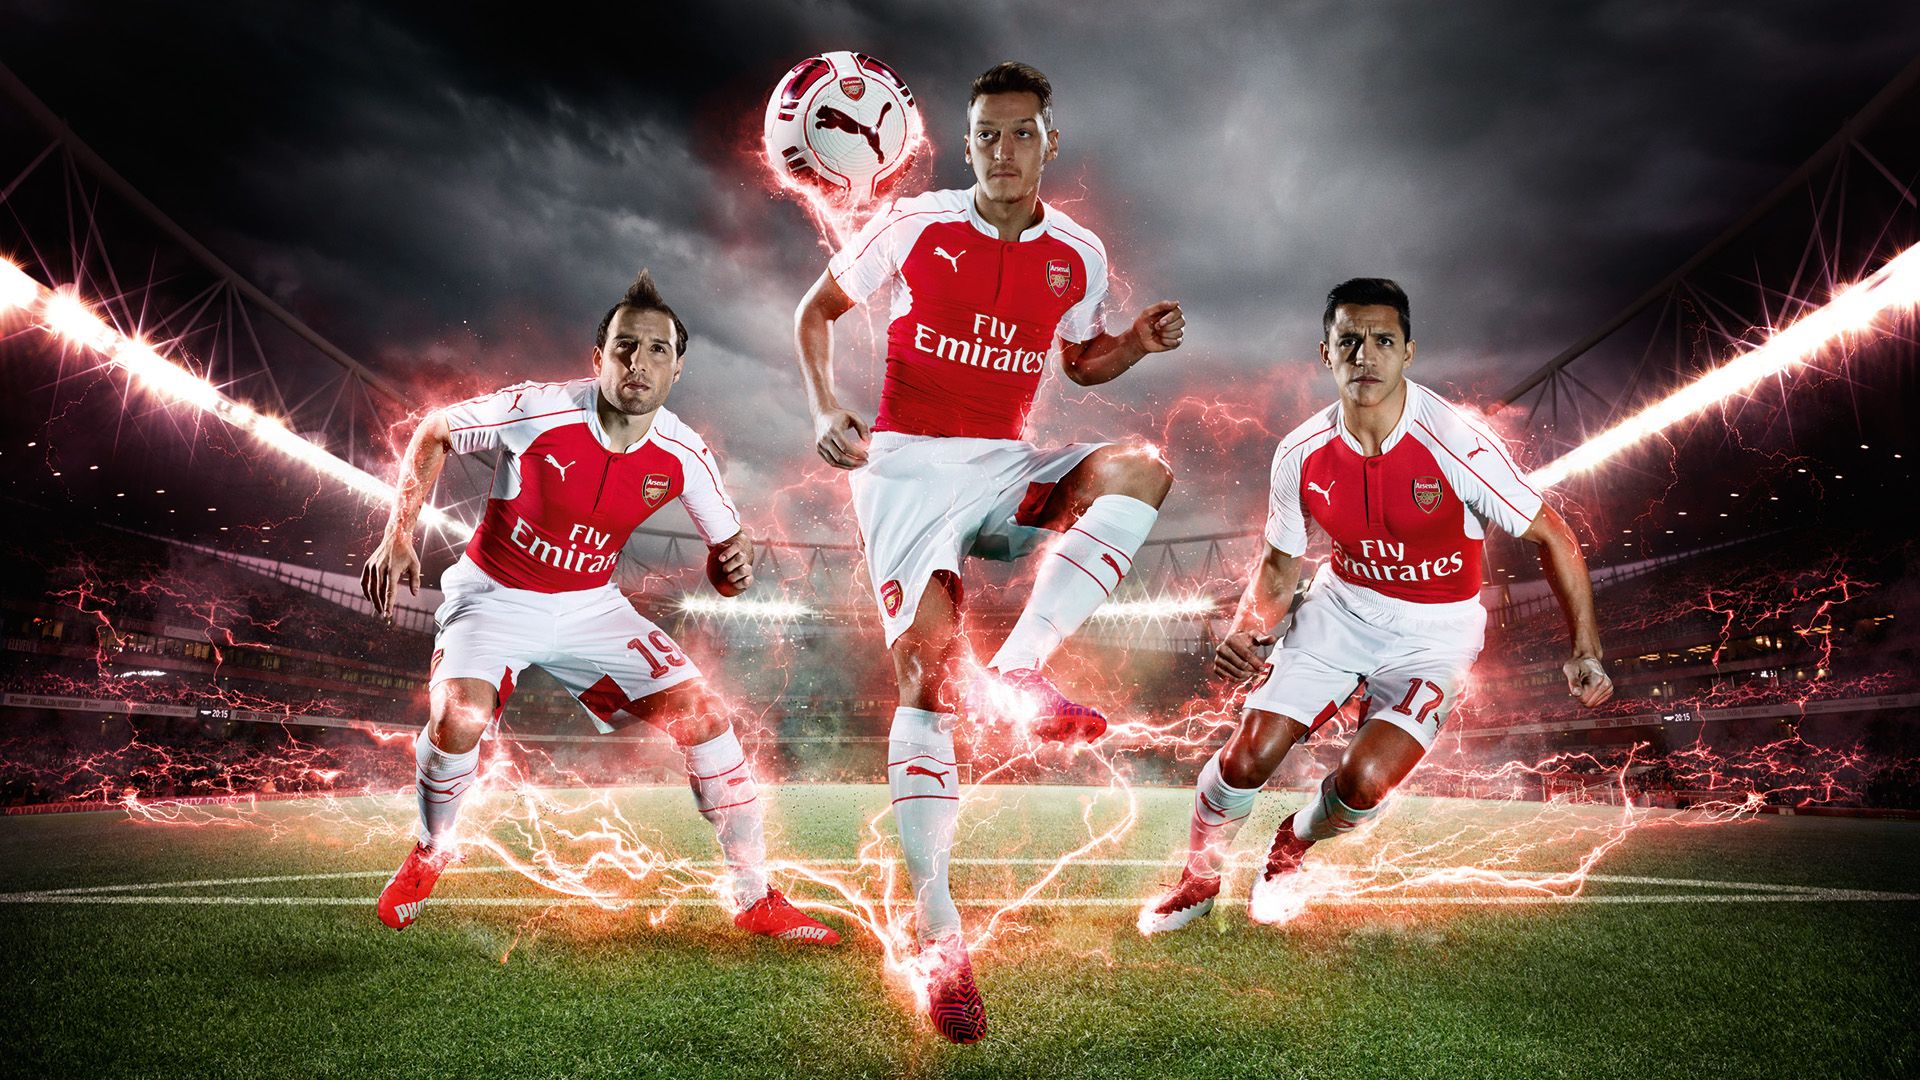 Download Gambar gambar pemain arsenal 2015 Terbaru